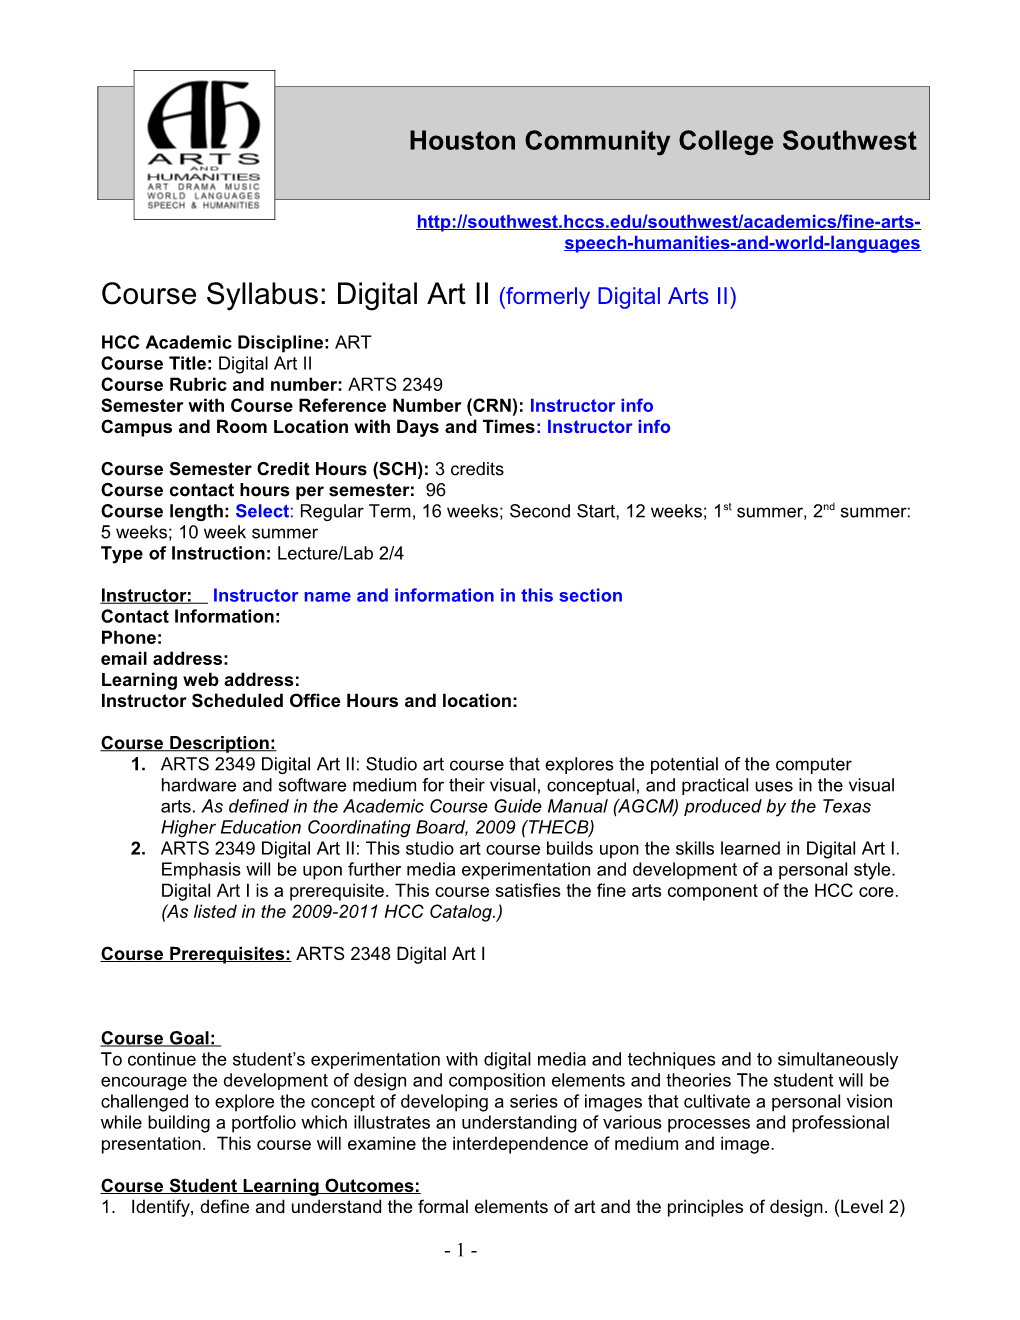 Course Syllabus: Digital Art II (Formerly Digital Arts II)